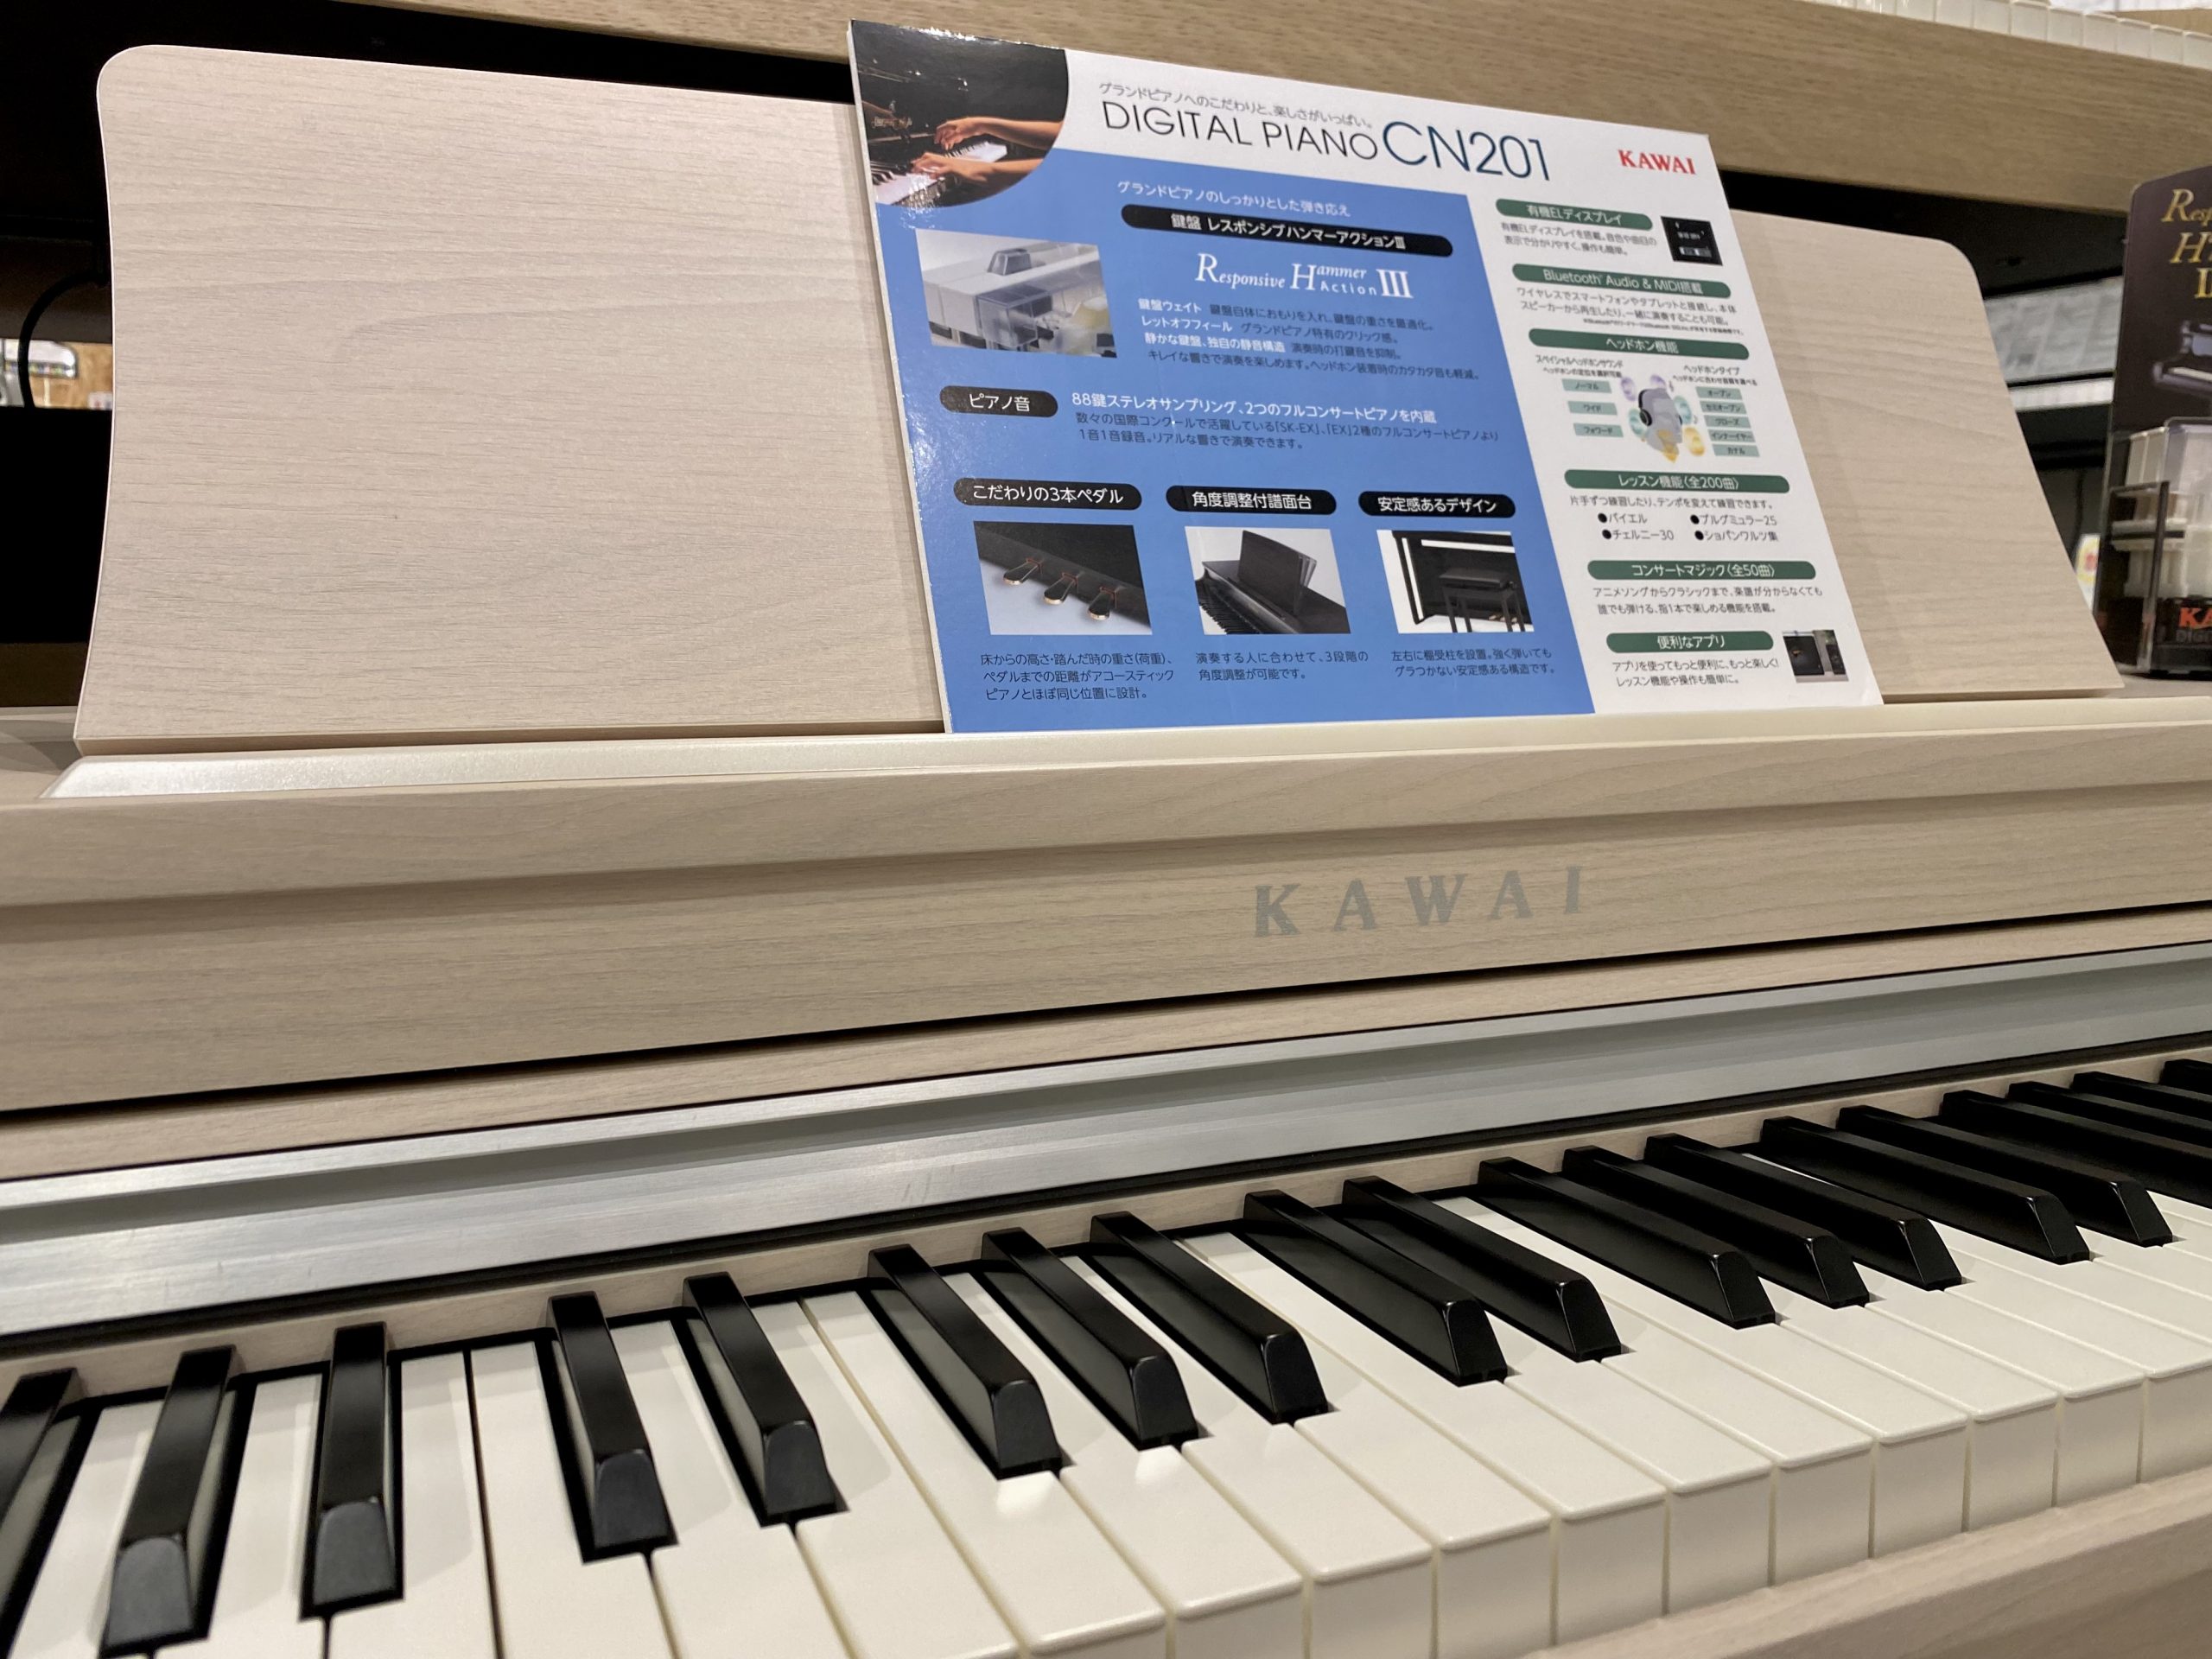 話題の新モデル 🎹【KAWAI CN201】 動画公開しました✨ - 電子ピアノ